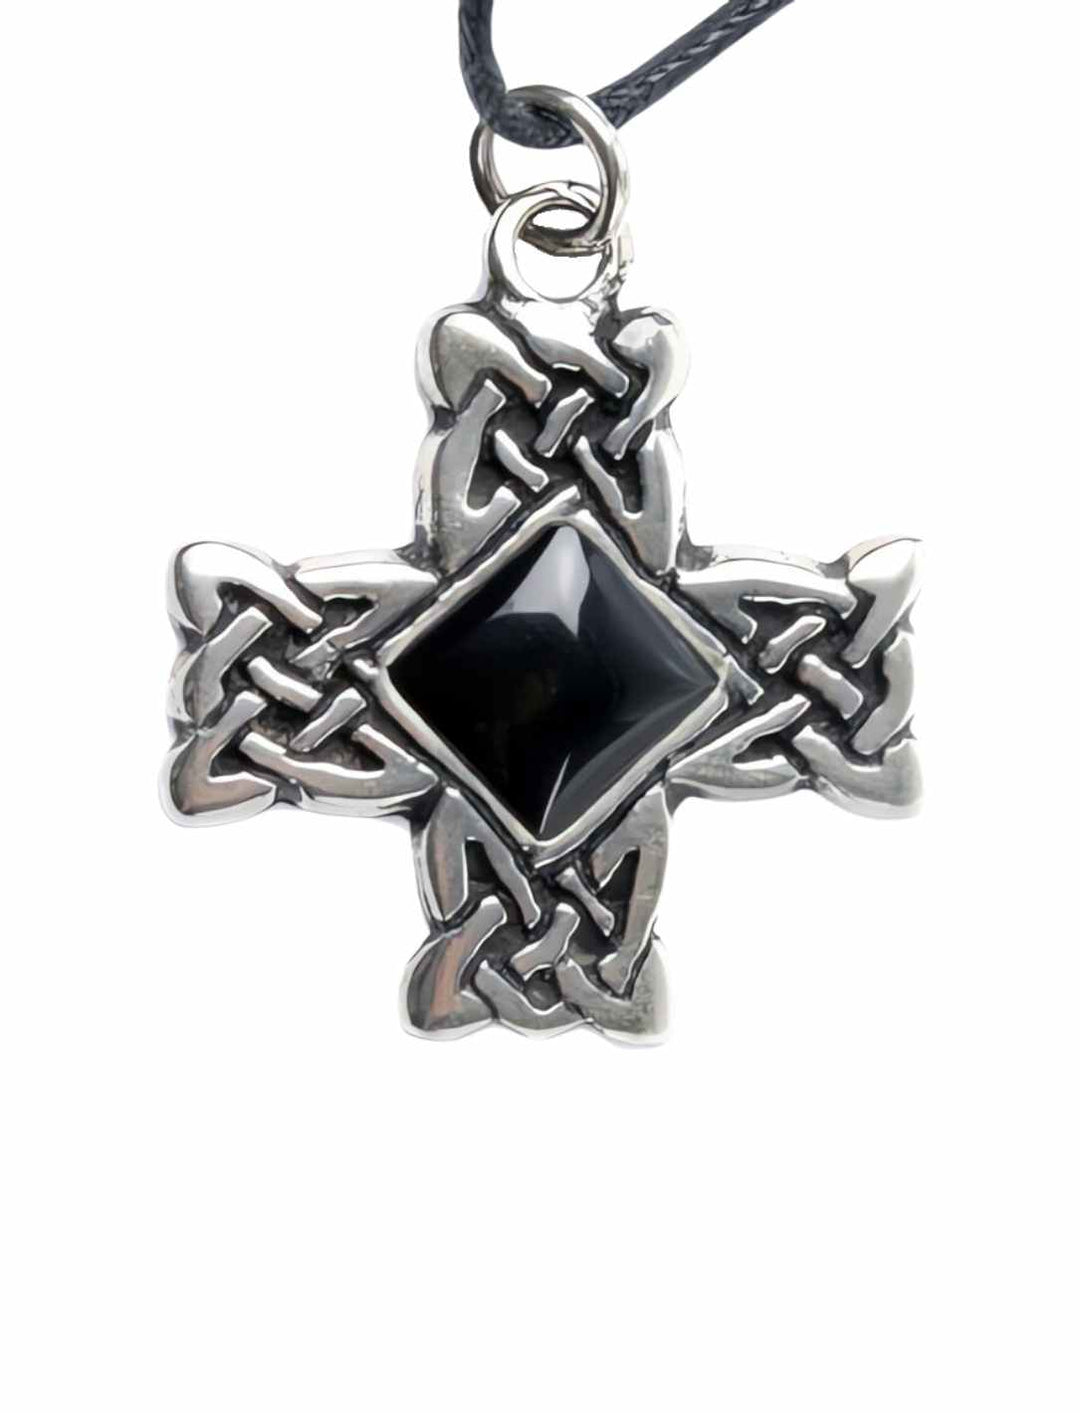 Produktibld des Kreuz der Druiden, 925 Sterling Silber Anhänger mit schwarzem Onyx - Runental.de